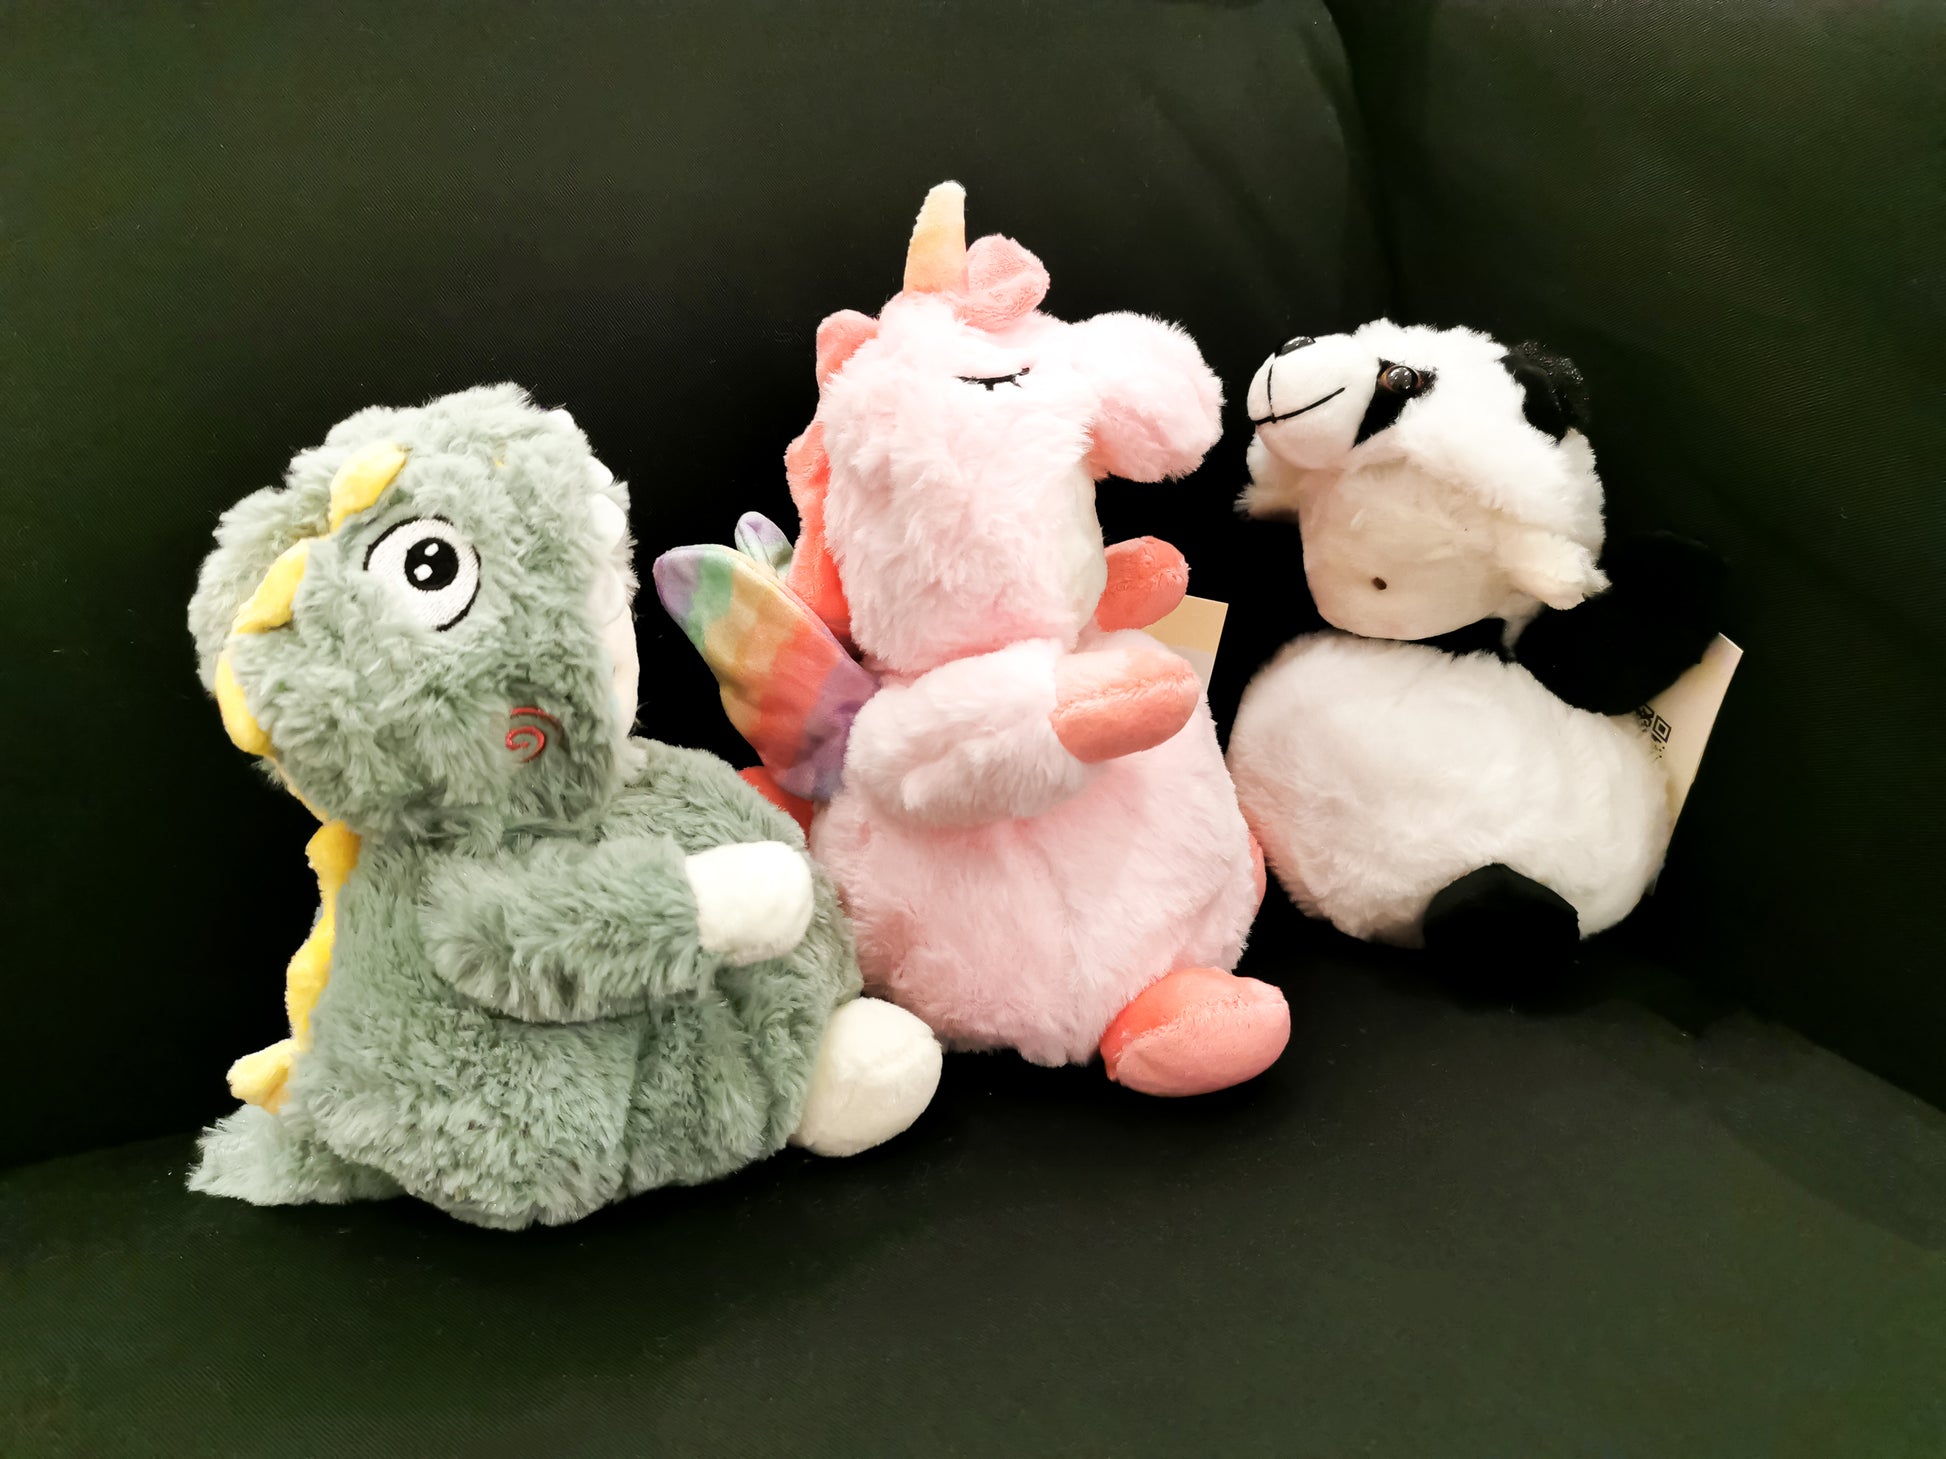 Soft Plush Toy - Unicorn - Gifts by Art Tree